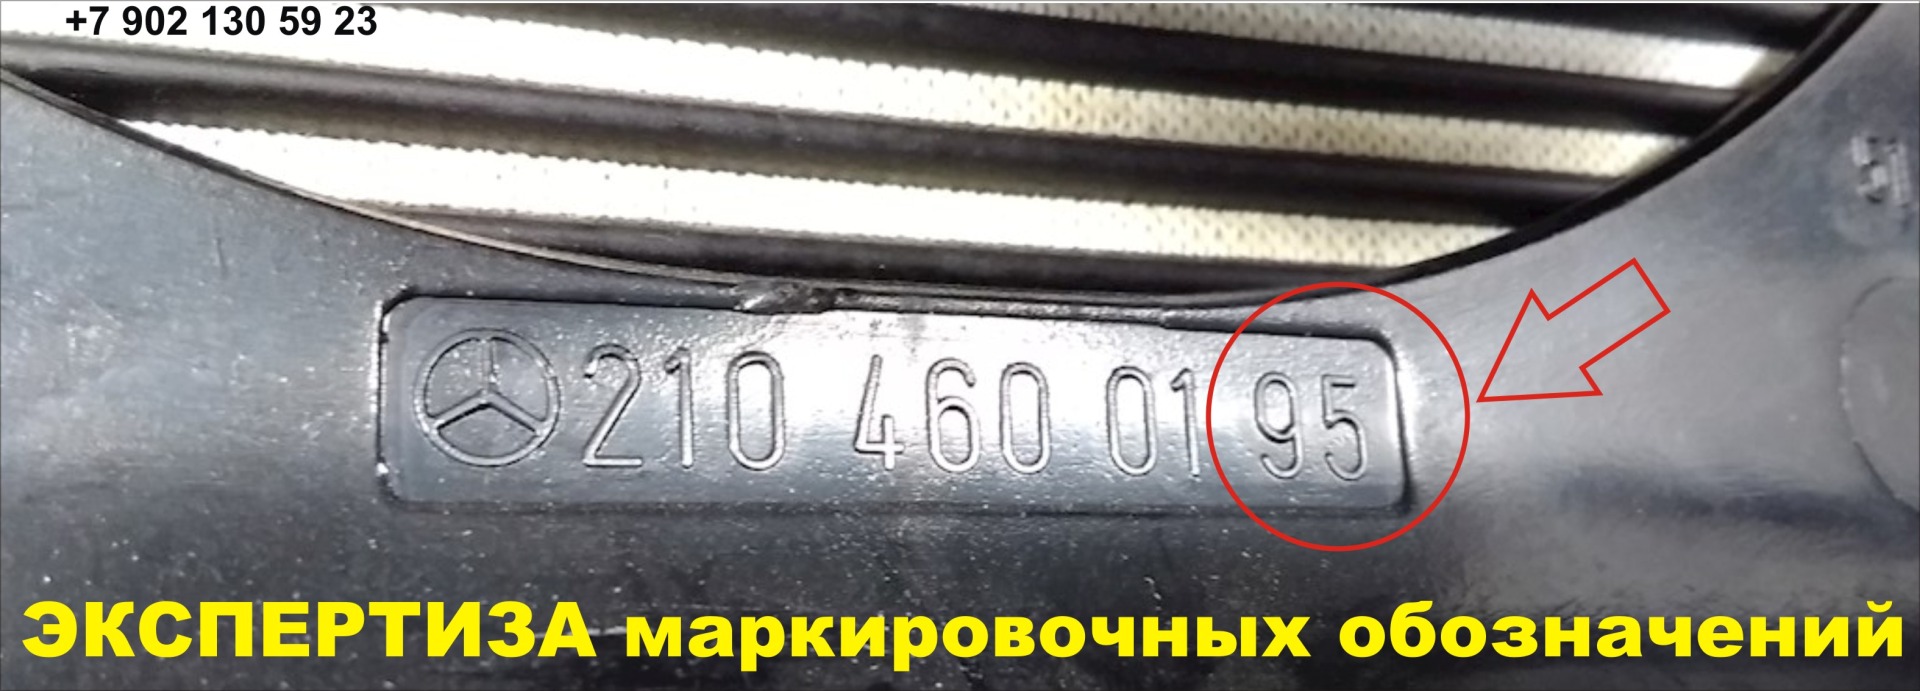 экспертиза маркировочных обозначений на автотранспортных средствах в Мурманске